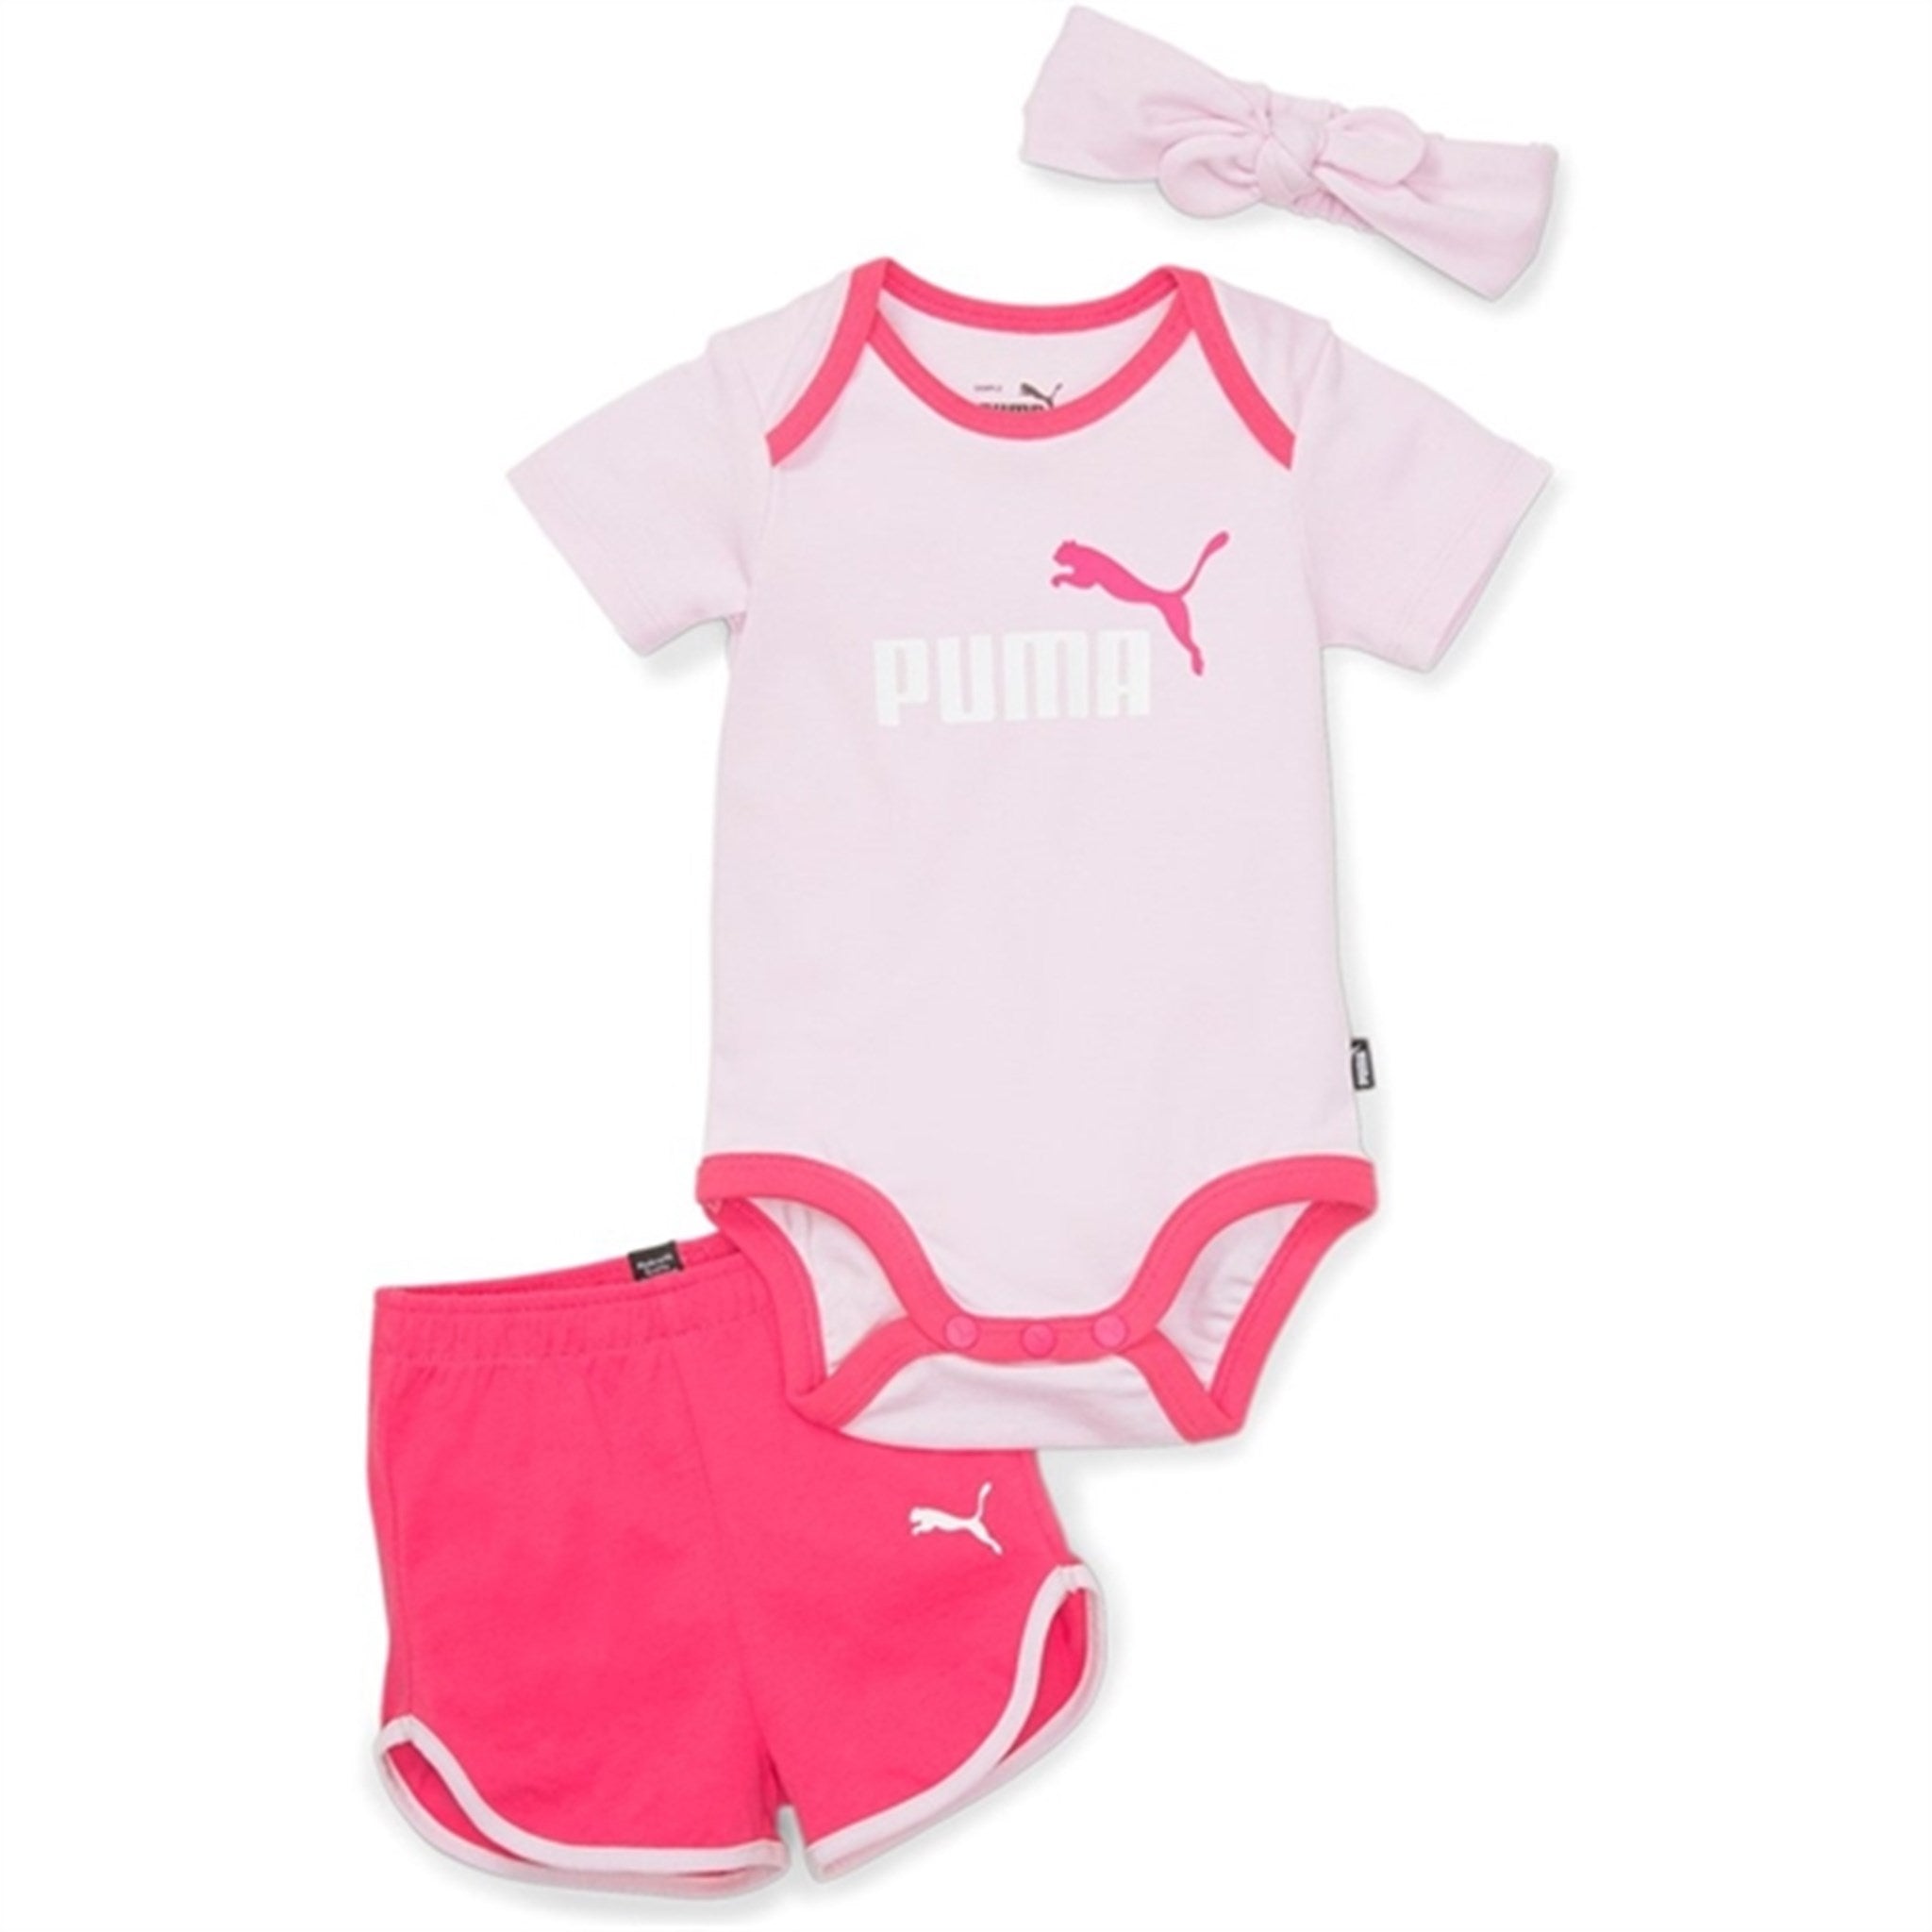 Puma Minicats Bow Newborn Set Pearl Pink